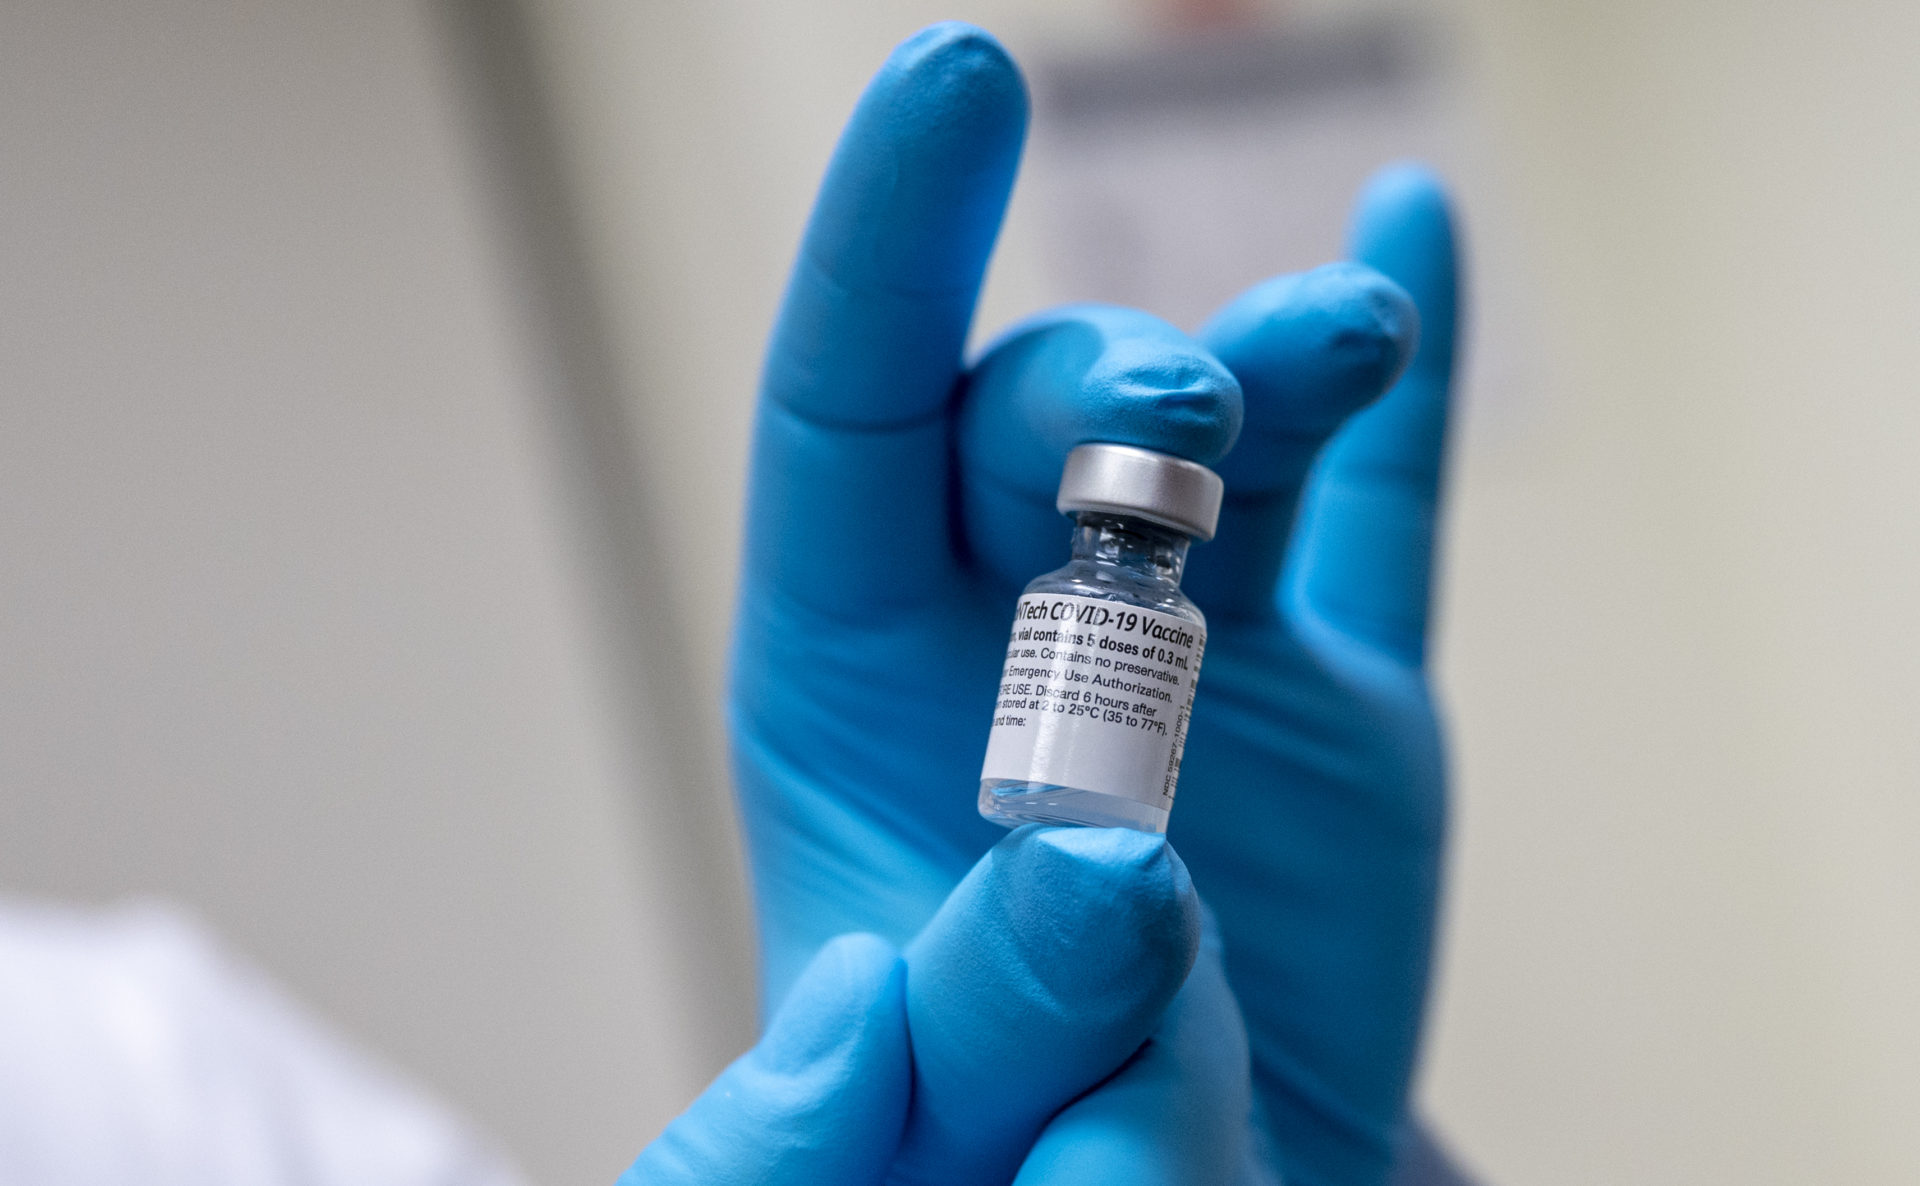 นิวซีแลนด์สั่งซื้อวัคซีน Pfizer เพิ่ม 500,000 โดส เพื่อสู้วิกฤติโควิด